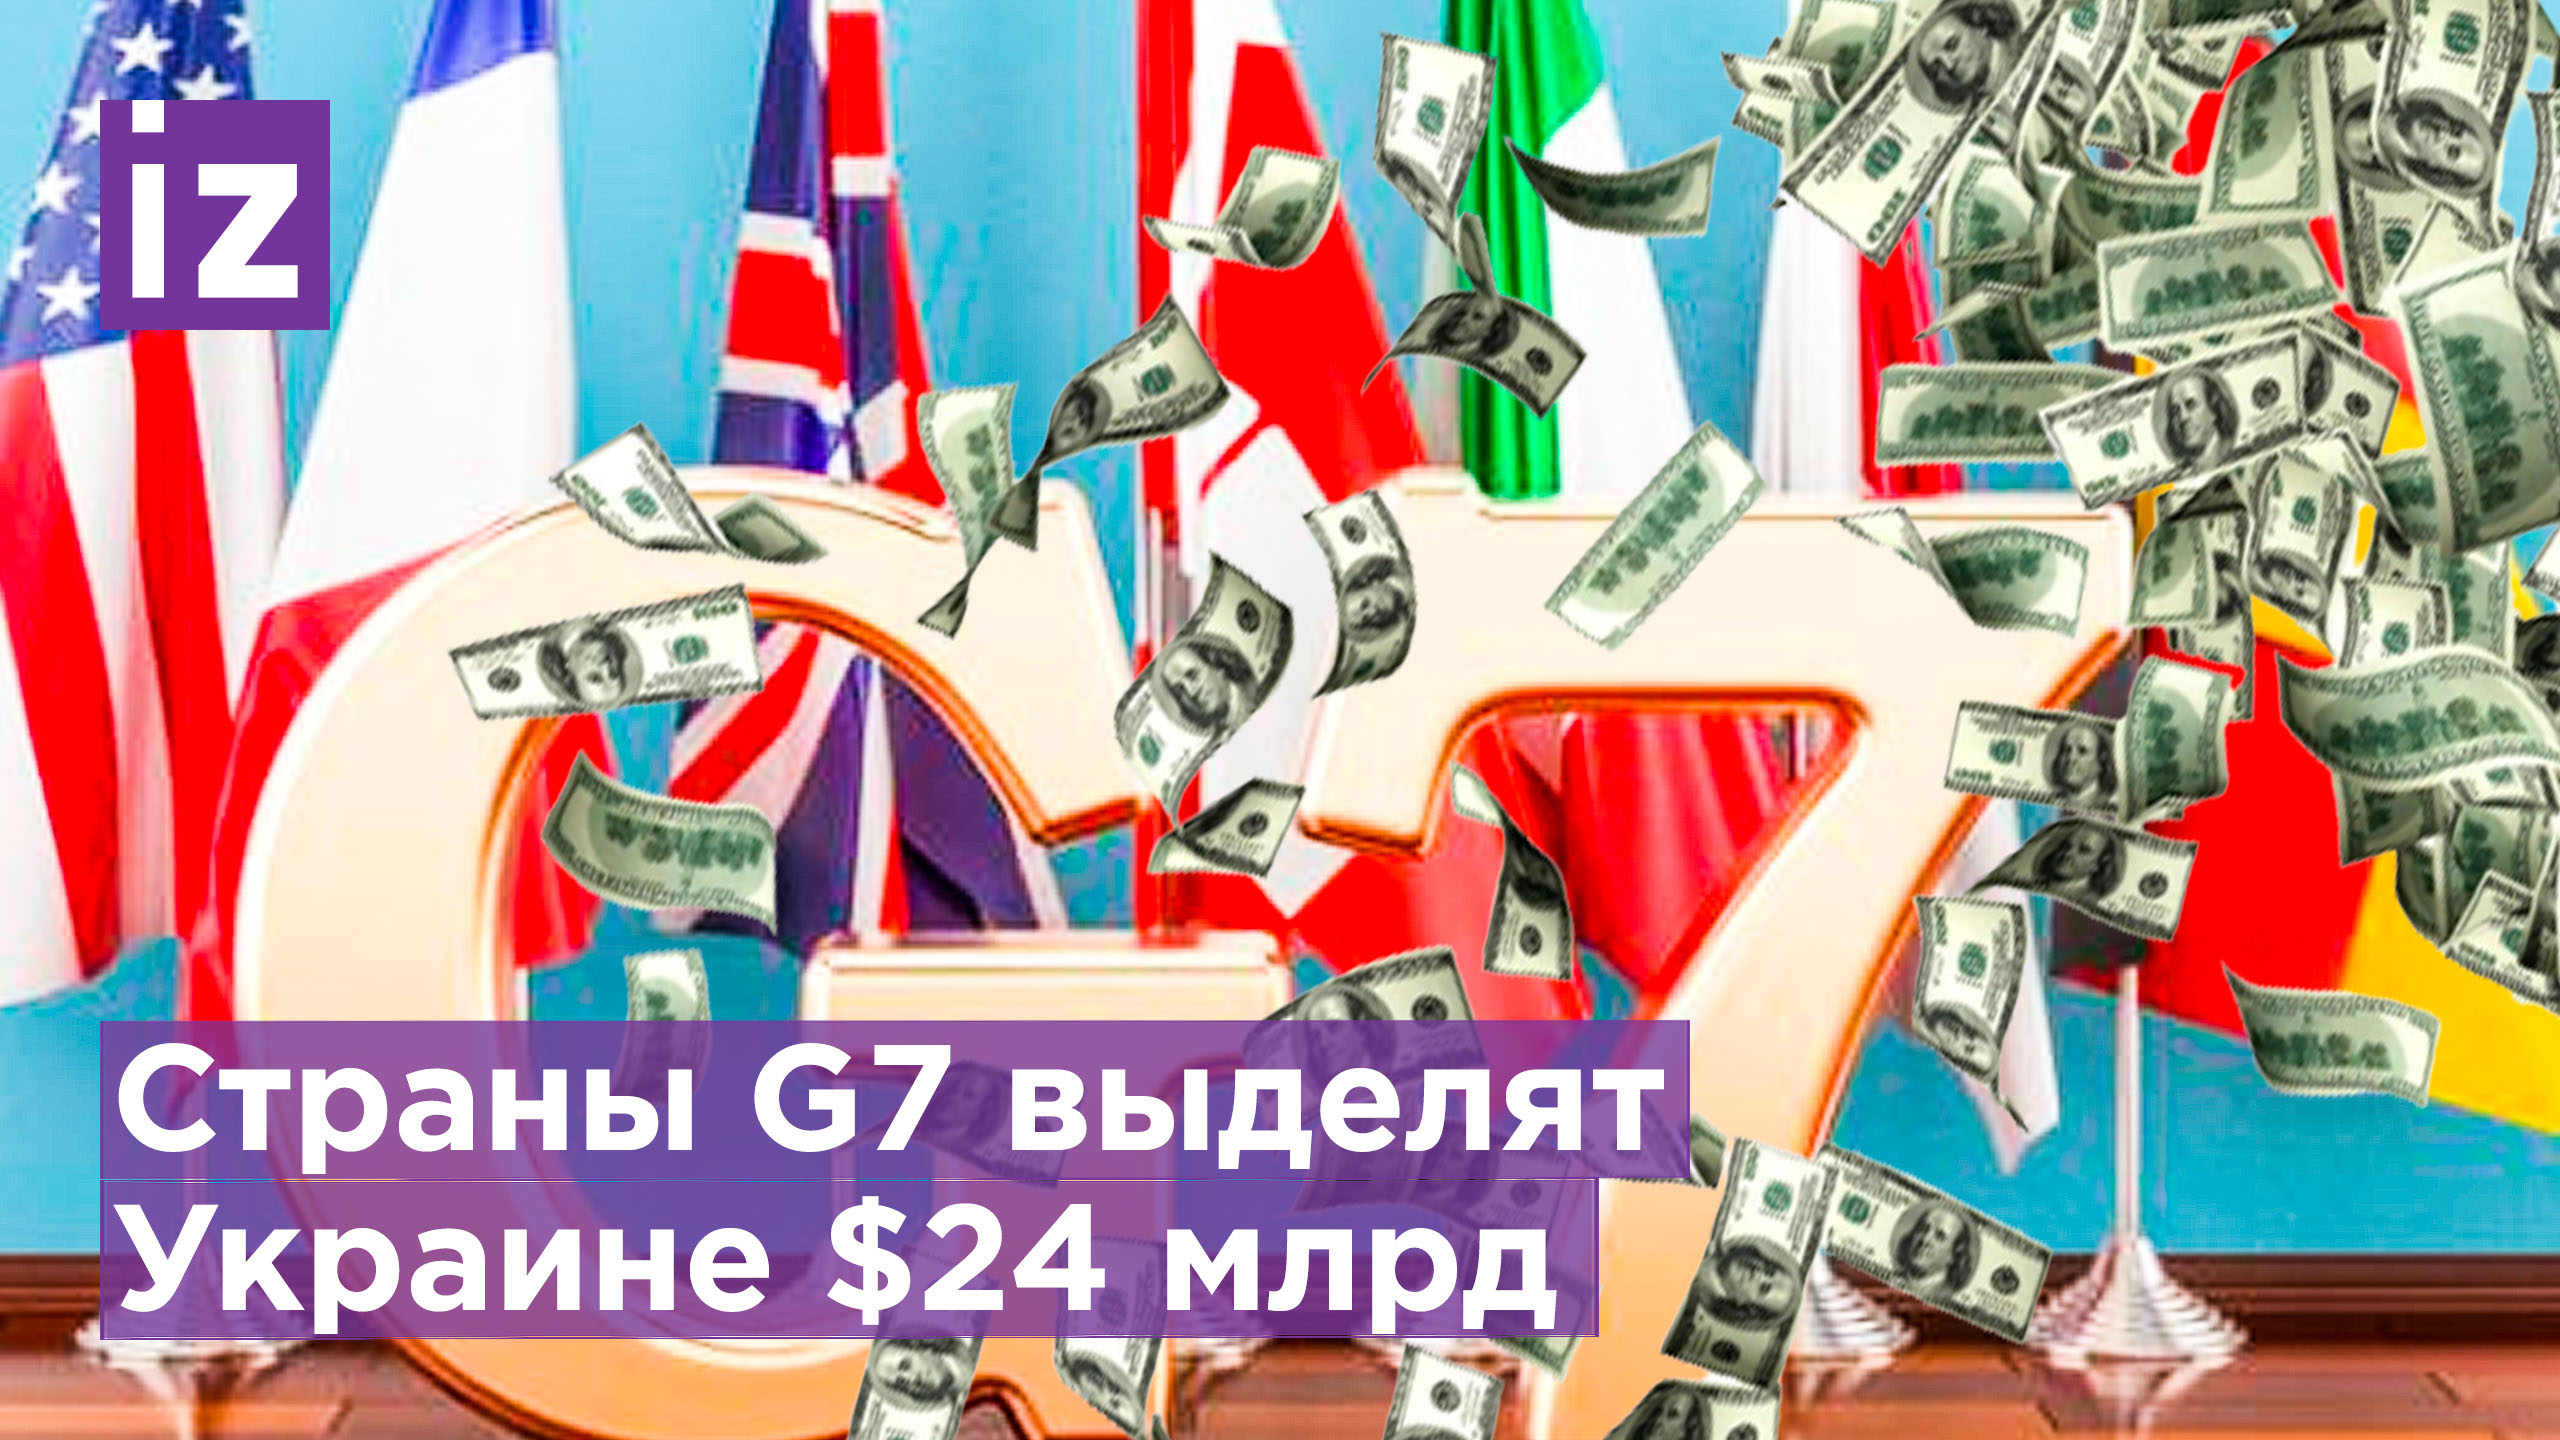 Страны G7 выделят Украине более $24 млрд / Известия